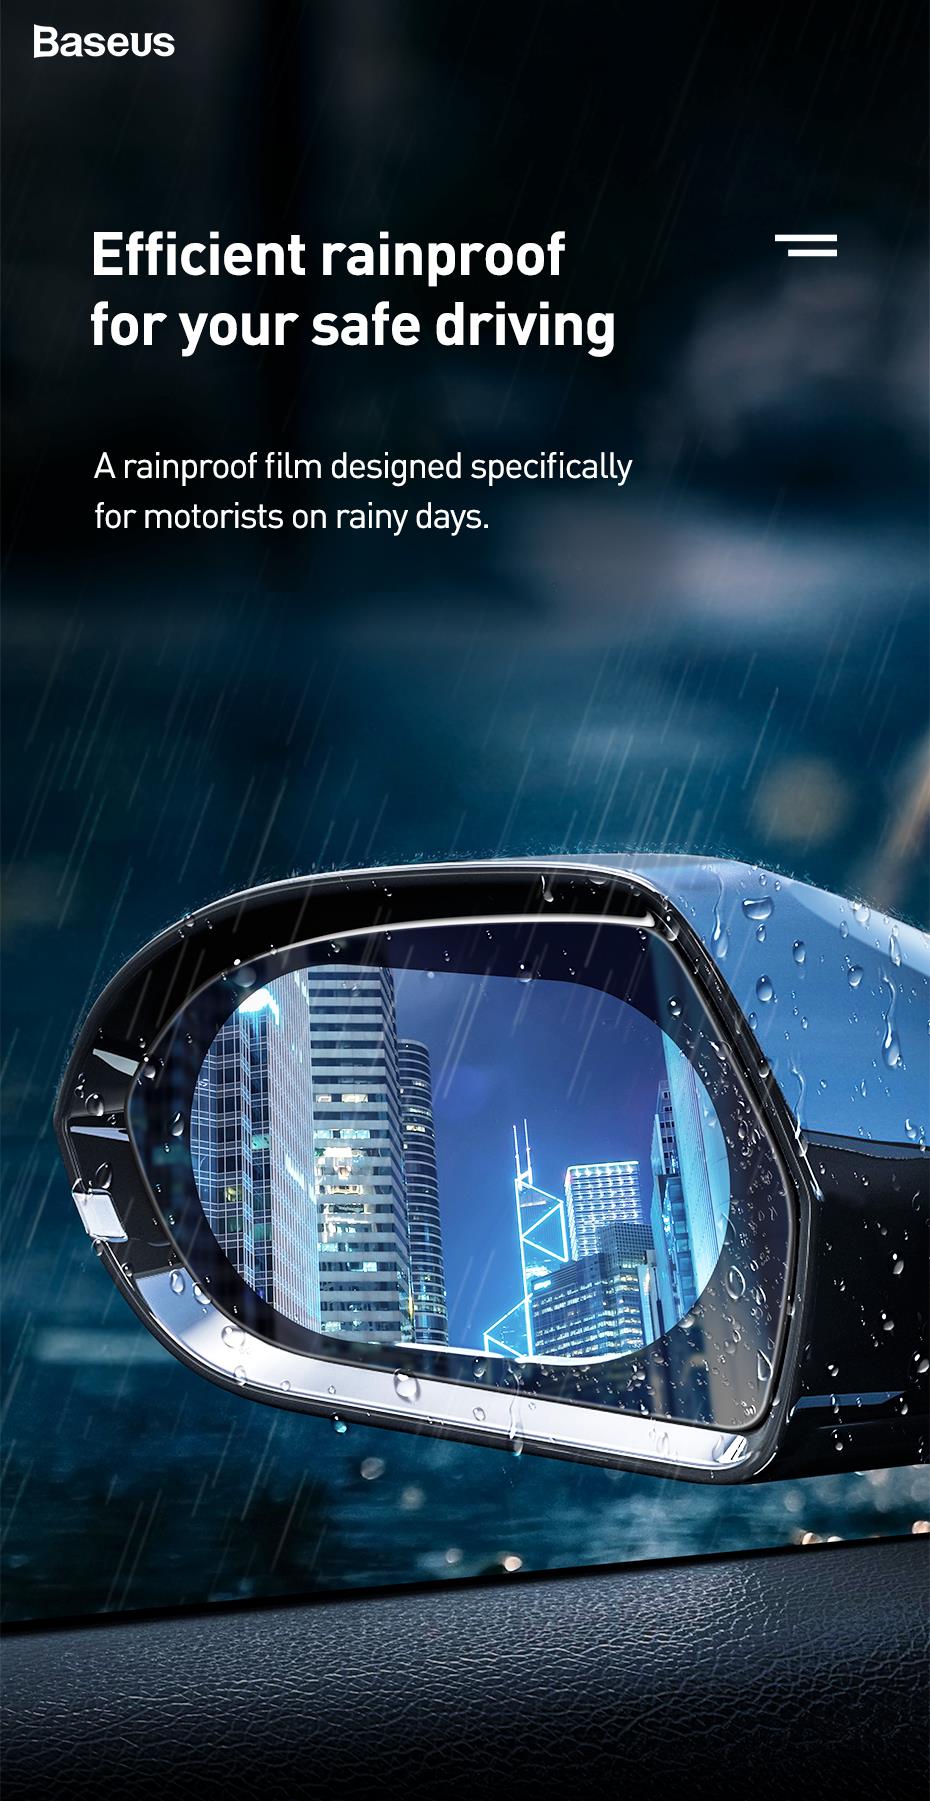 Folie protectie oglinda auto pentru ploaie Baseus, RAINPROOF FILM, Montare usoara, Transparent 1 Lerato.ro